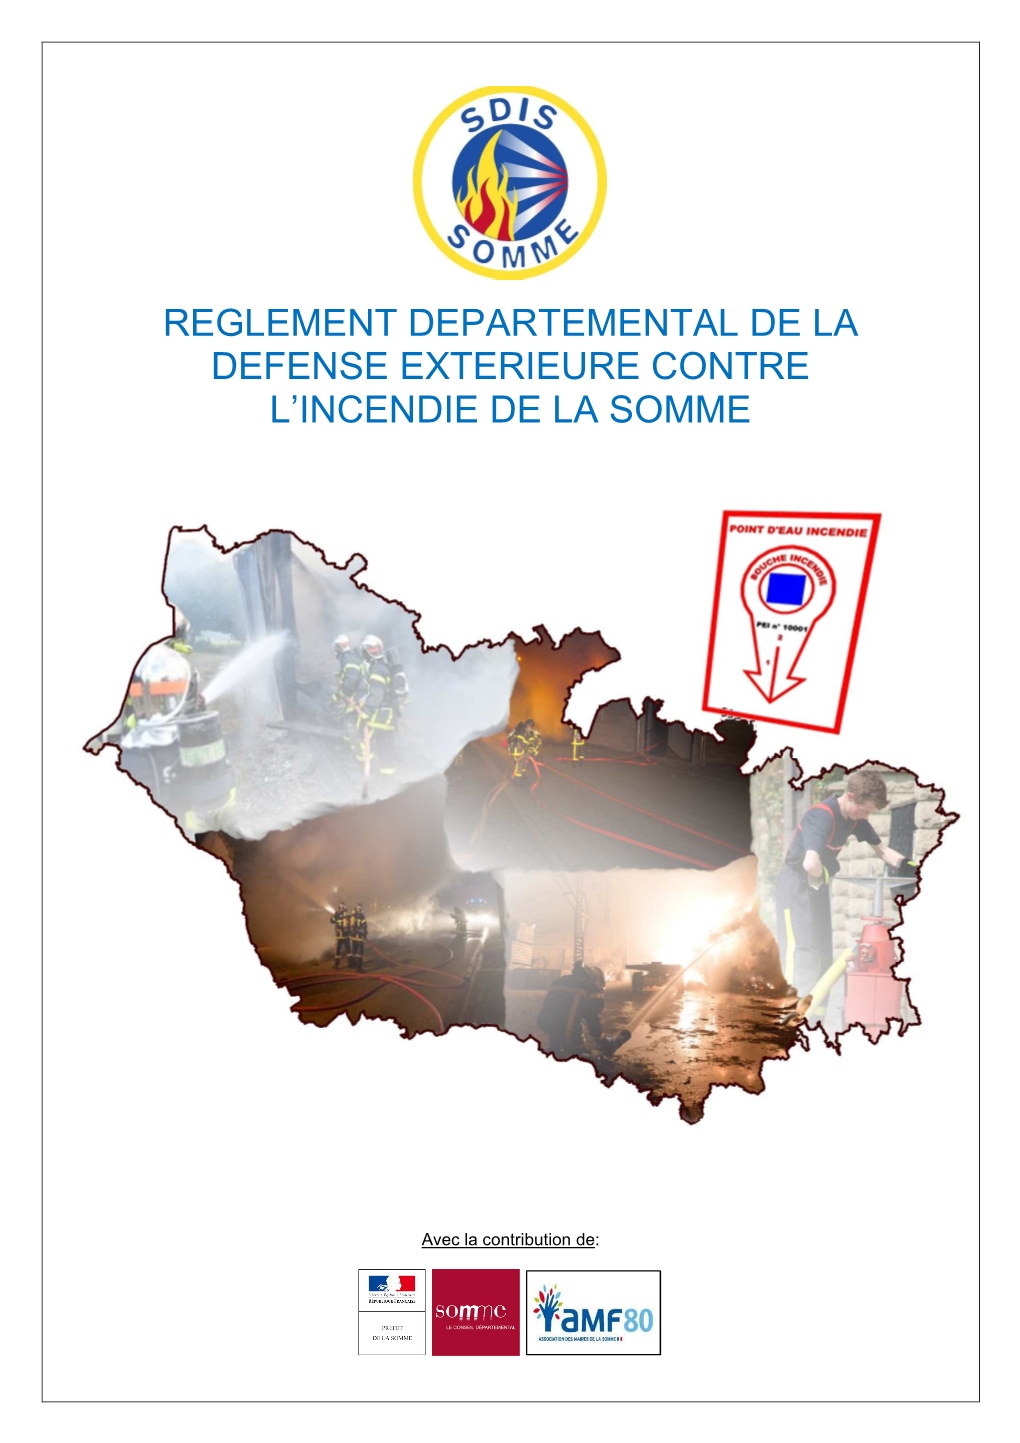 Reglement Departemental De La Defense Exterieure Contre L'incendie De La Somme